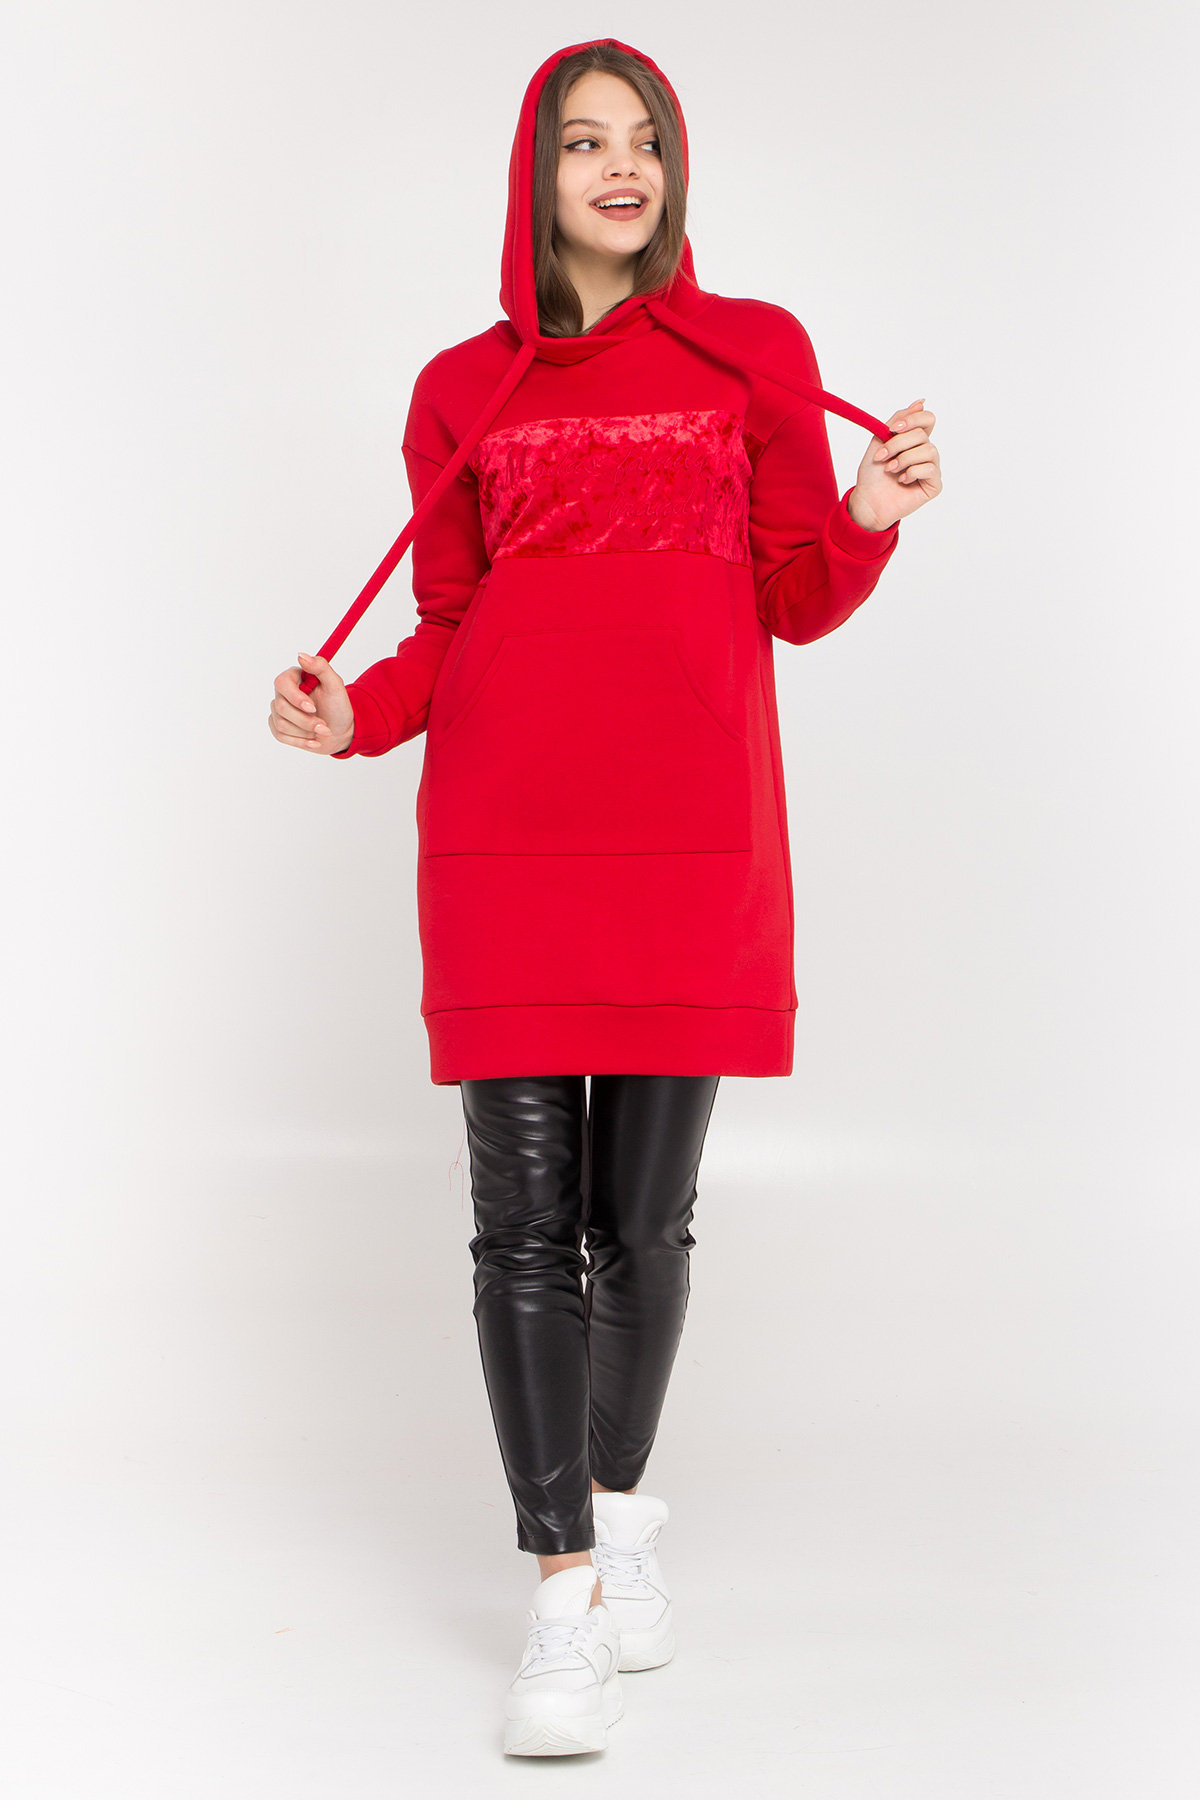 Платье худи Томми 8703 АРТ. 45100 Цвет: Красный/красный - фото 2, интернет магазин tm-modus.ru